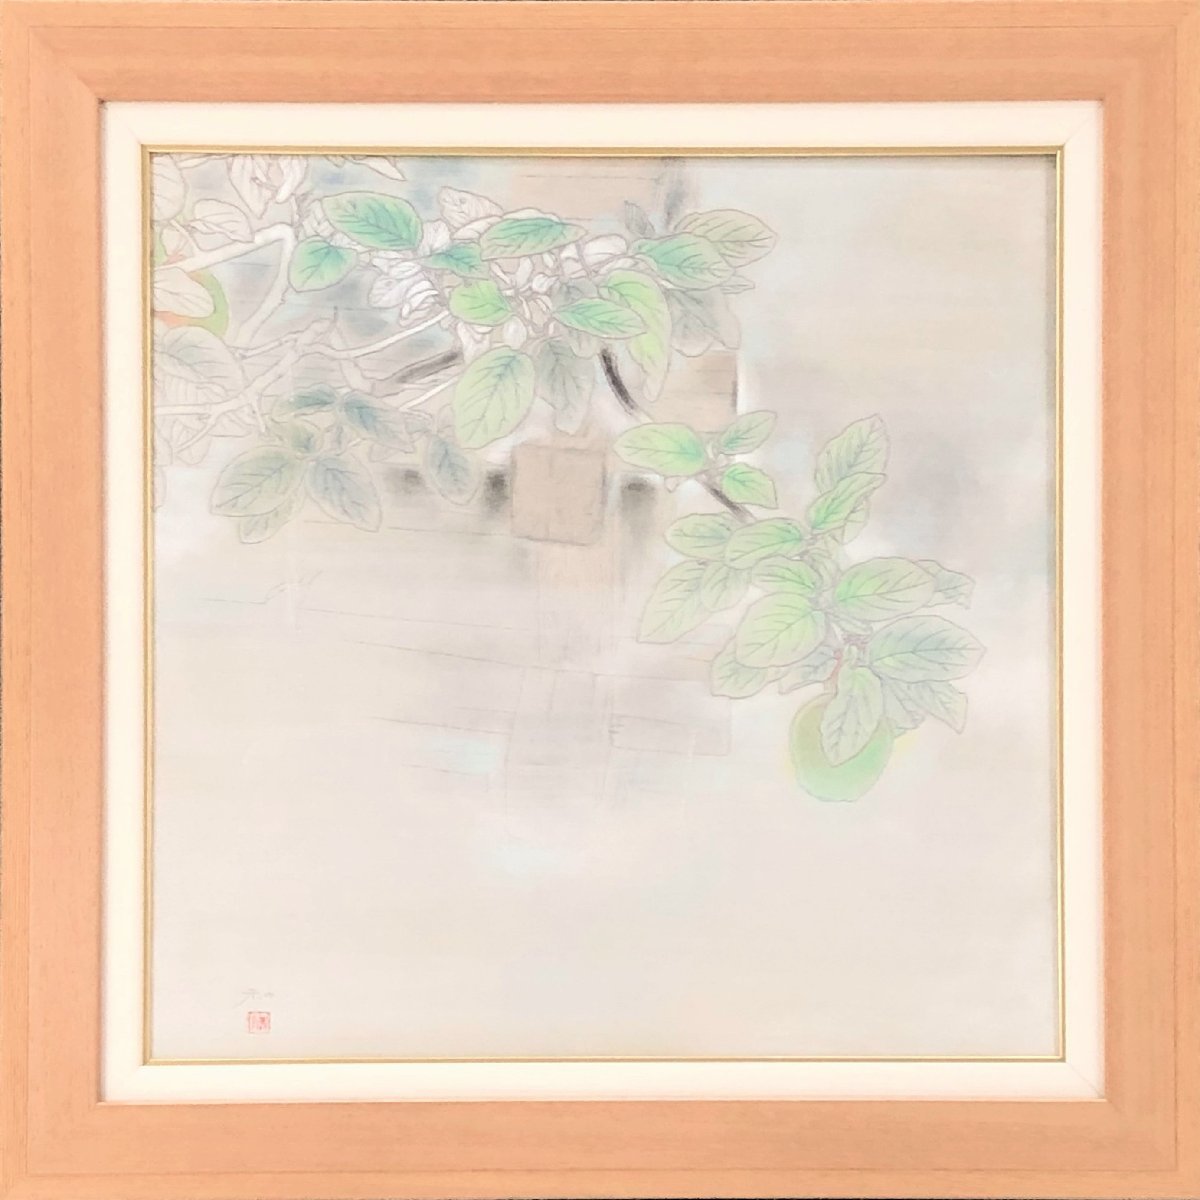 Echte Arbeit von Saito Kazu Yakuka 10S Japanische Malerei Das Strahlen, das entsteht, wenn man mit etwas Schönem in Berührung kommt... [Seiko Gallery] Gegründet vor 53 Jahren, Es ist eine der größten Kunstgalerien in Tokio., Malerei, Japanische Malerei, Andere